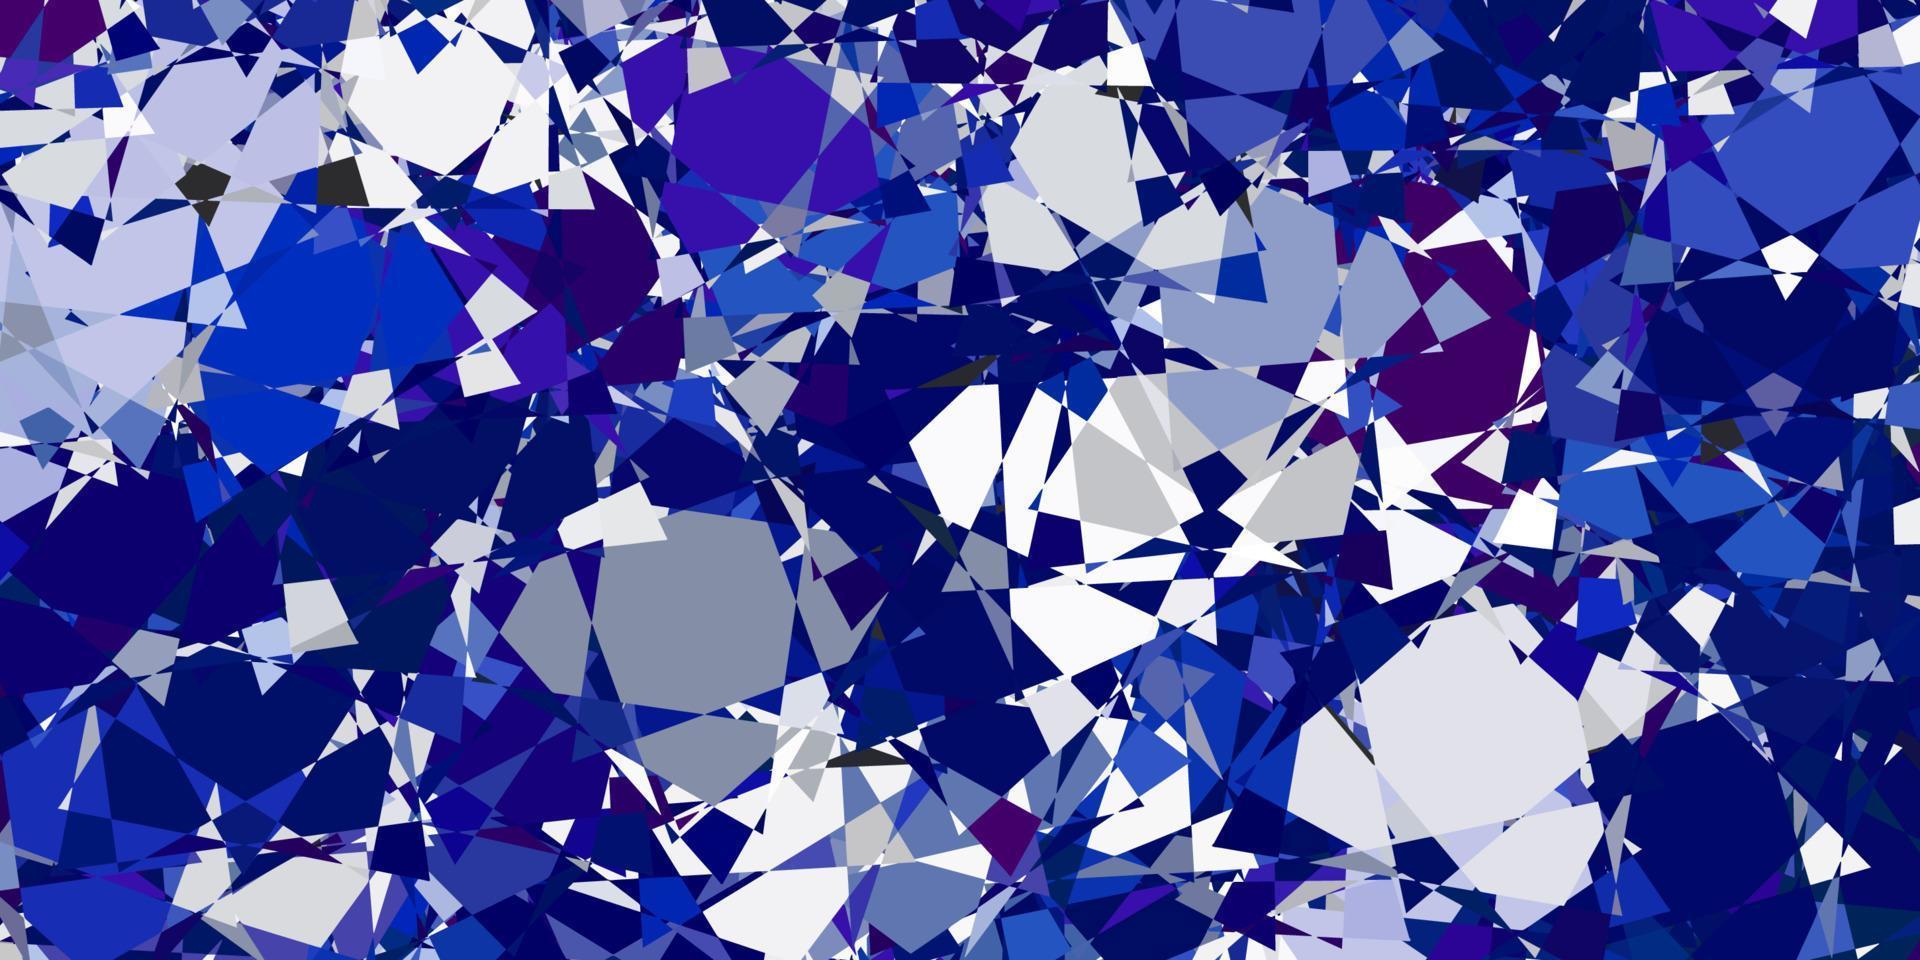 textura vector azul claro com triângulos aleatórios.